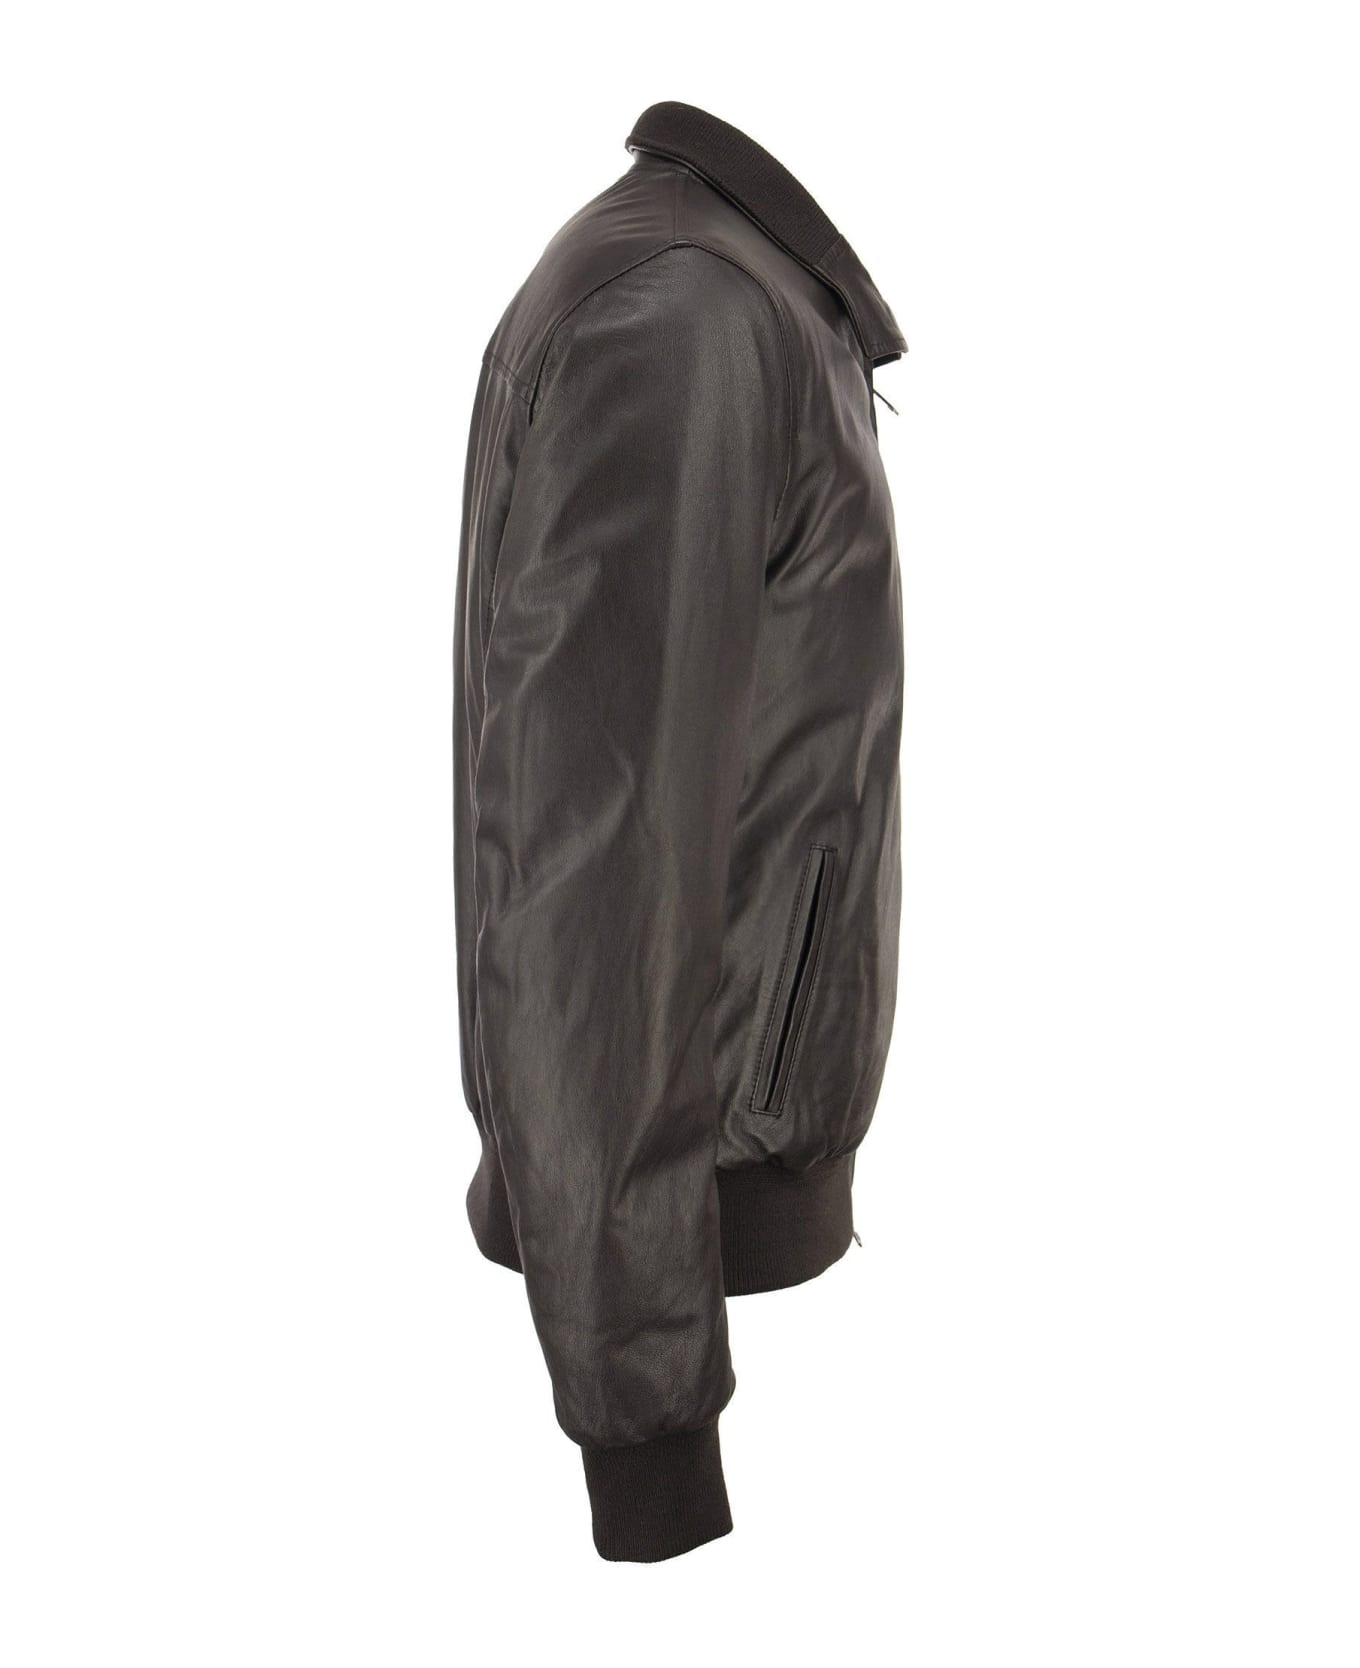 Stewart Nuvola Etere Drowne-slim - Genuine Lambskin Jacket - Dark Brown レザージャケット